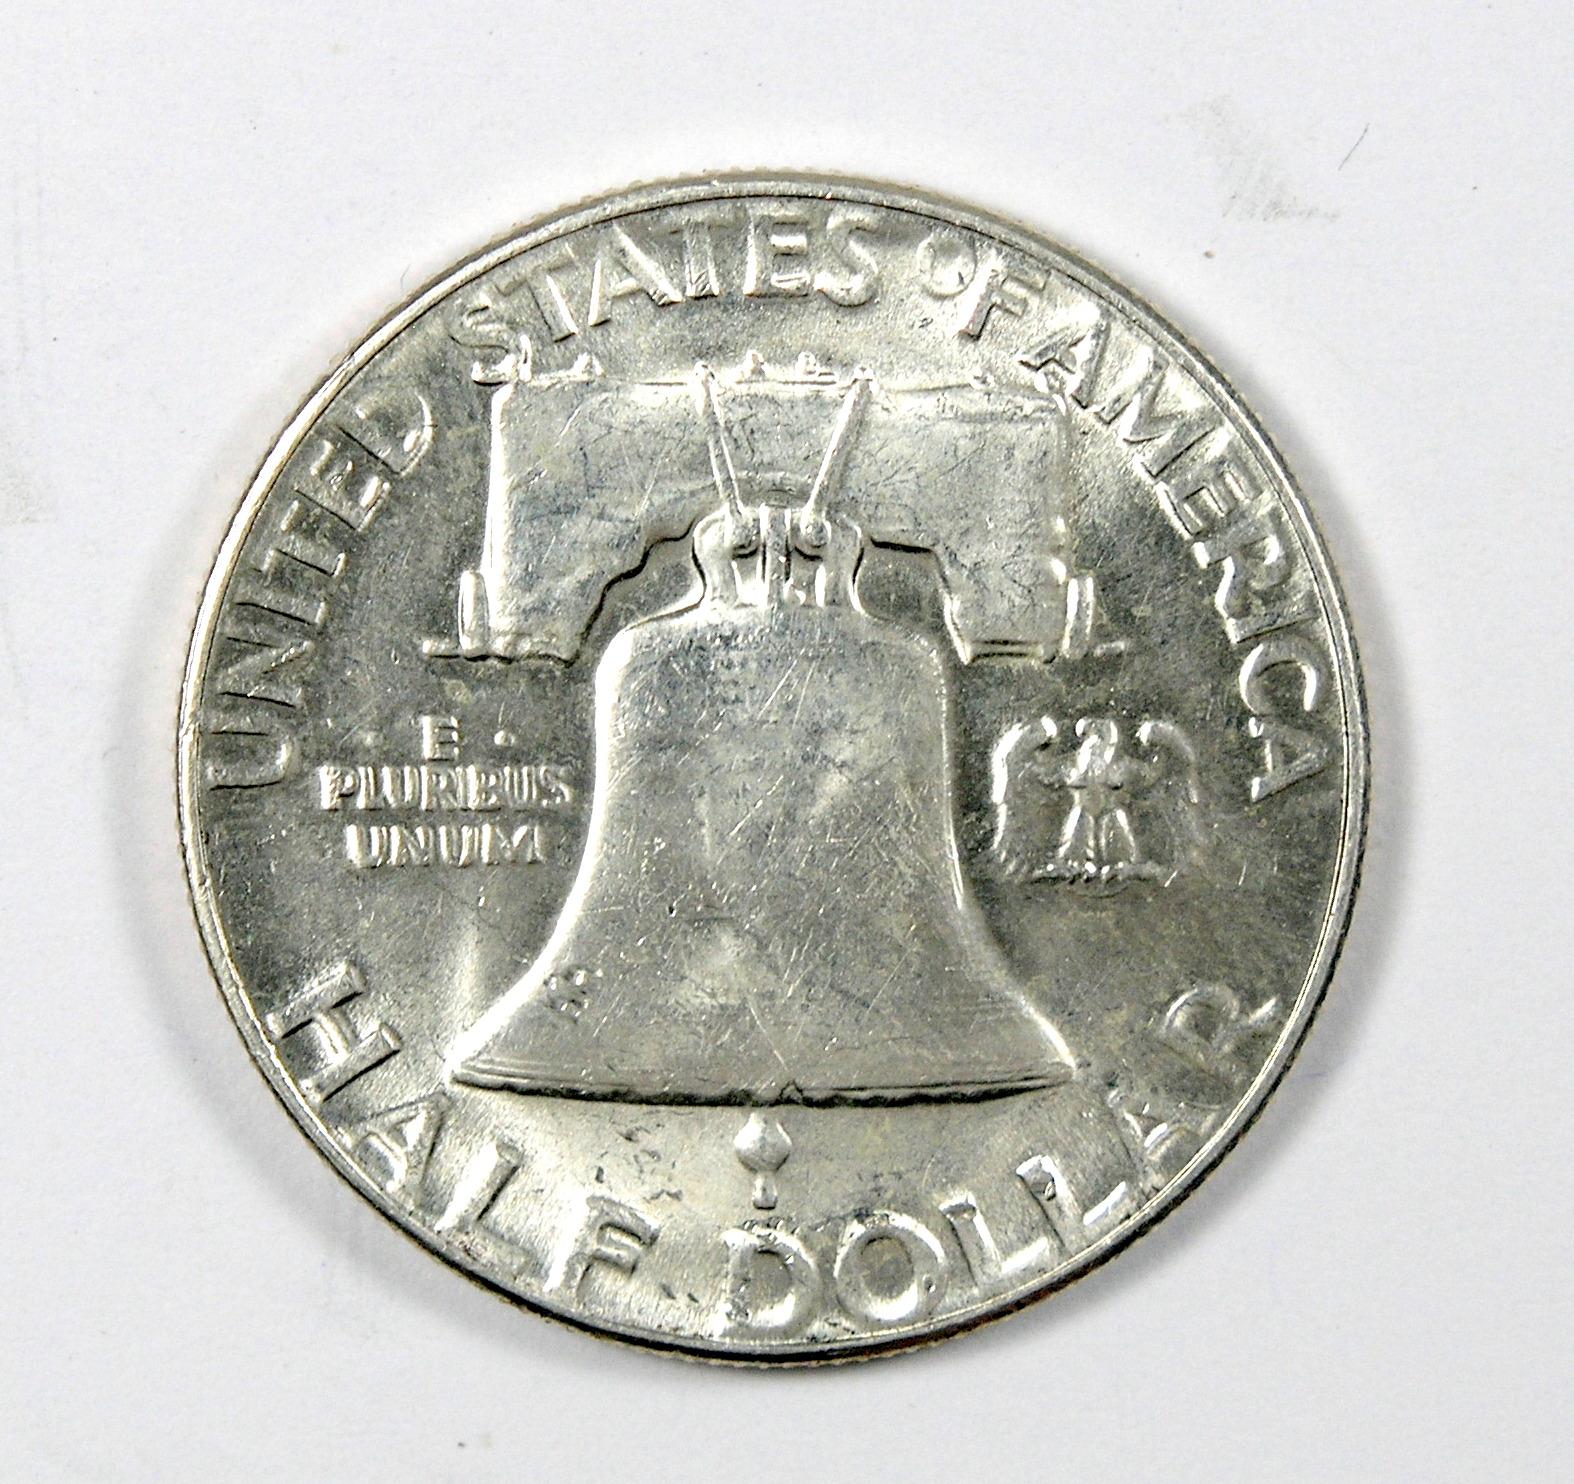 1953 Franklin Half Dollar MS-63